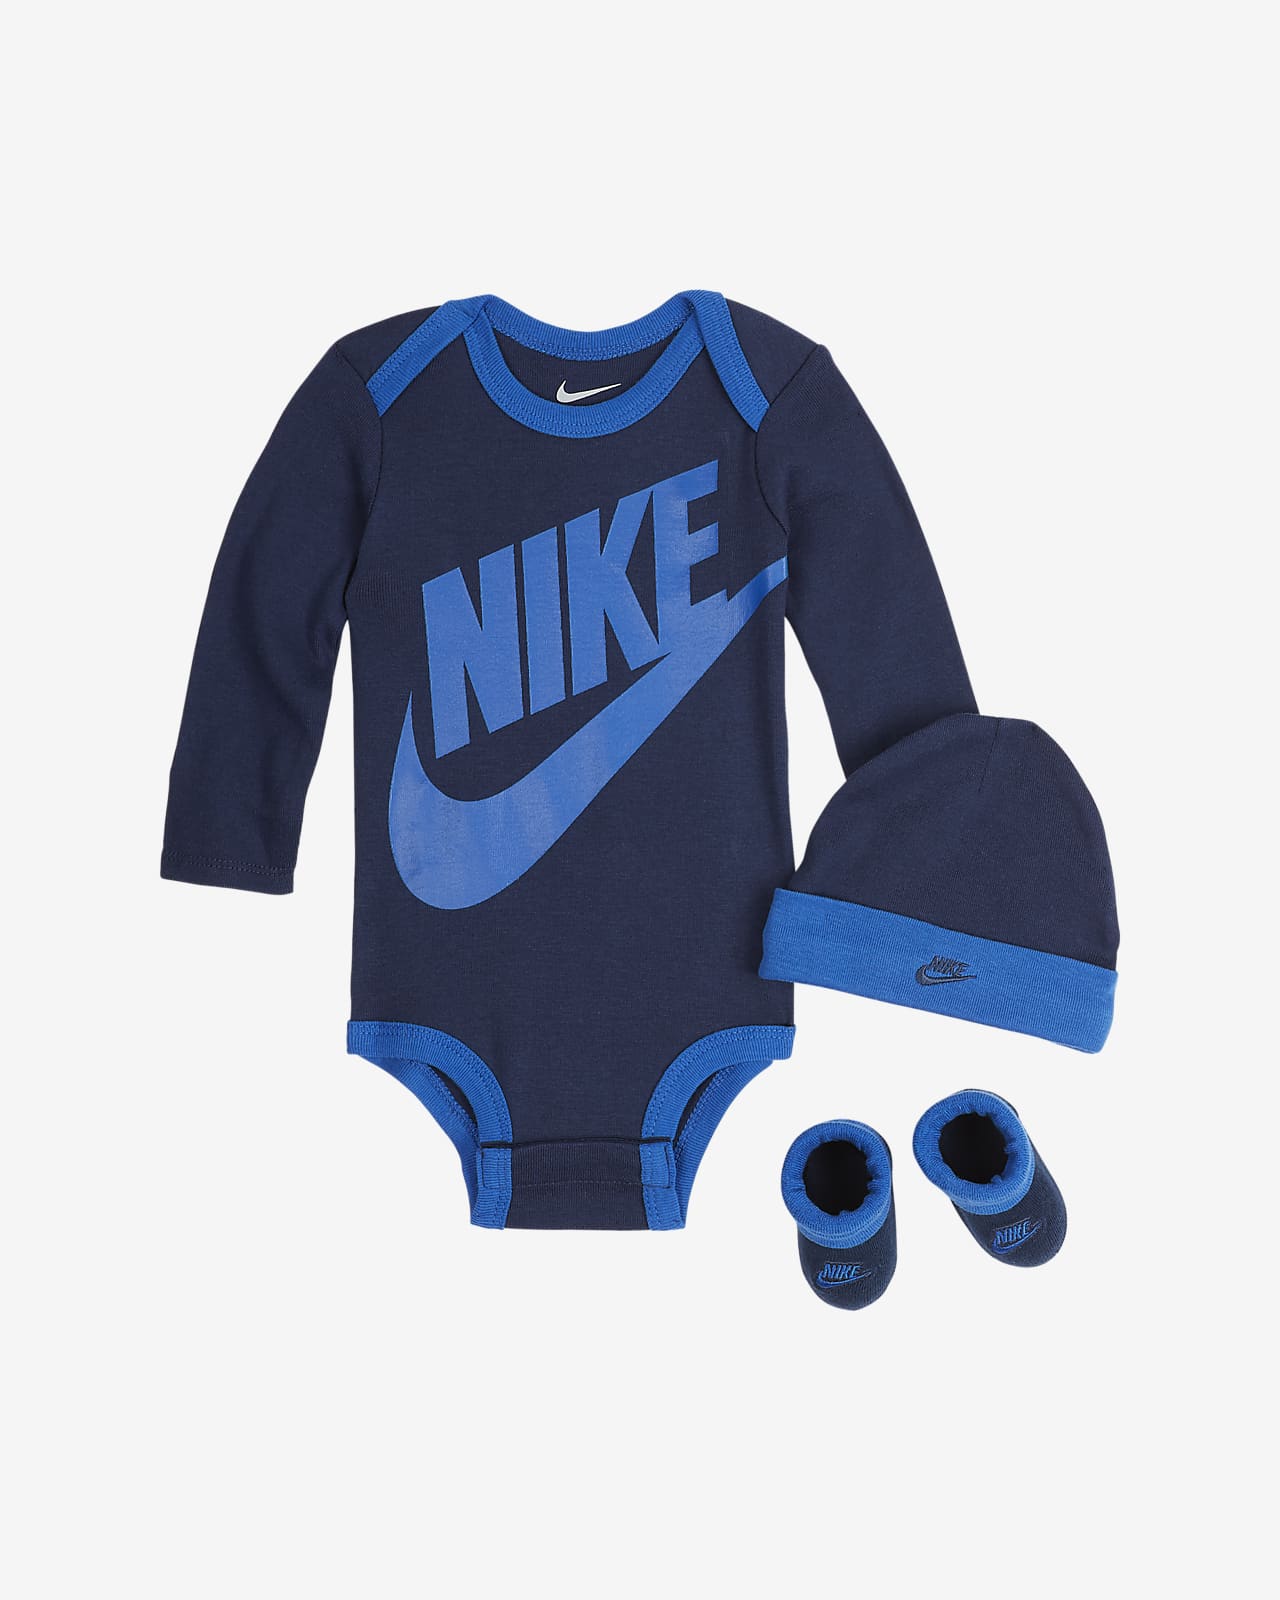 Conjunto de body, gorro y calzado para bebés (0 a 6 meses) Nike. Nike.com